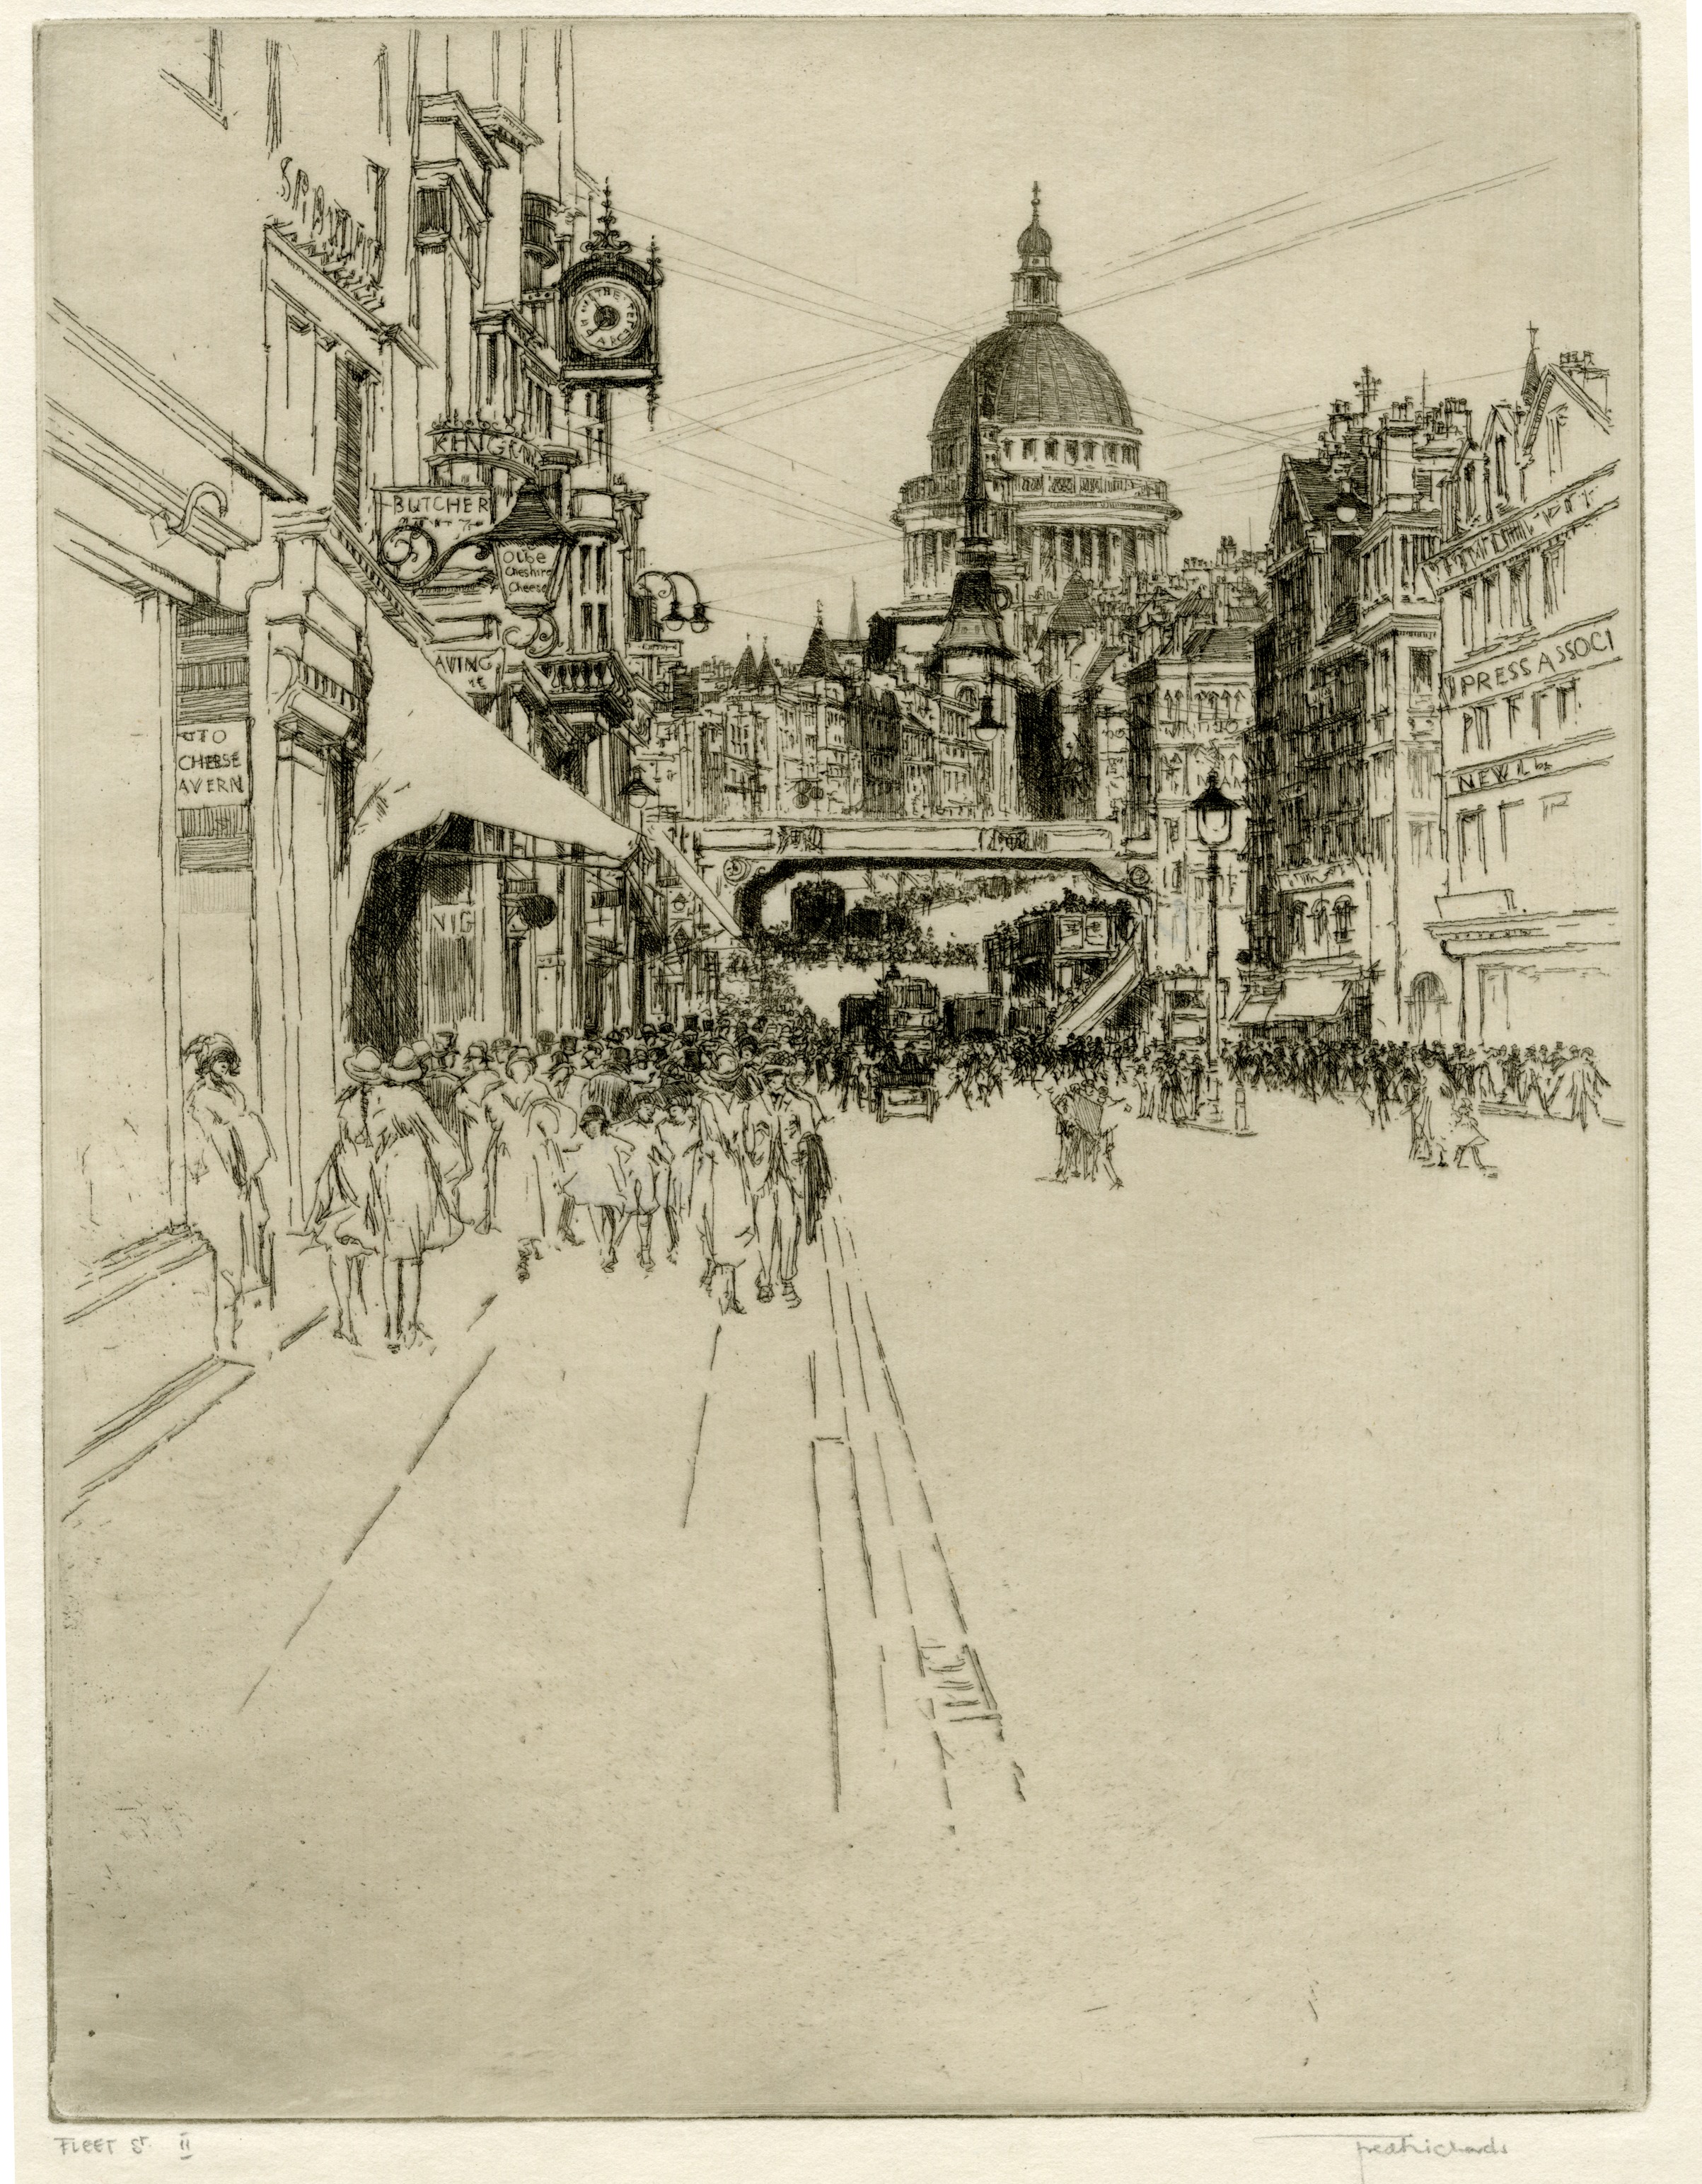 Fleet Street II (1930)